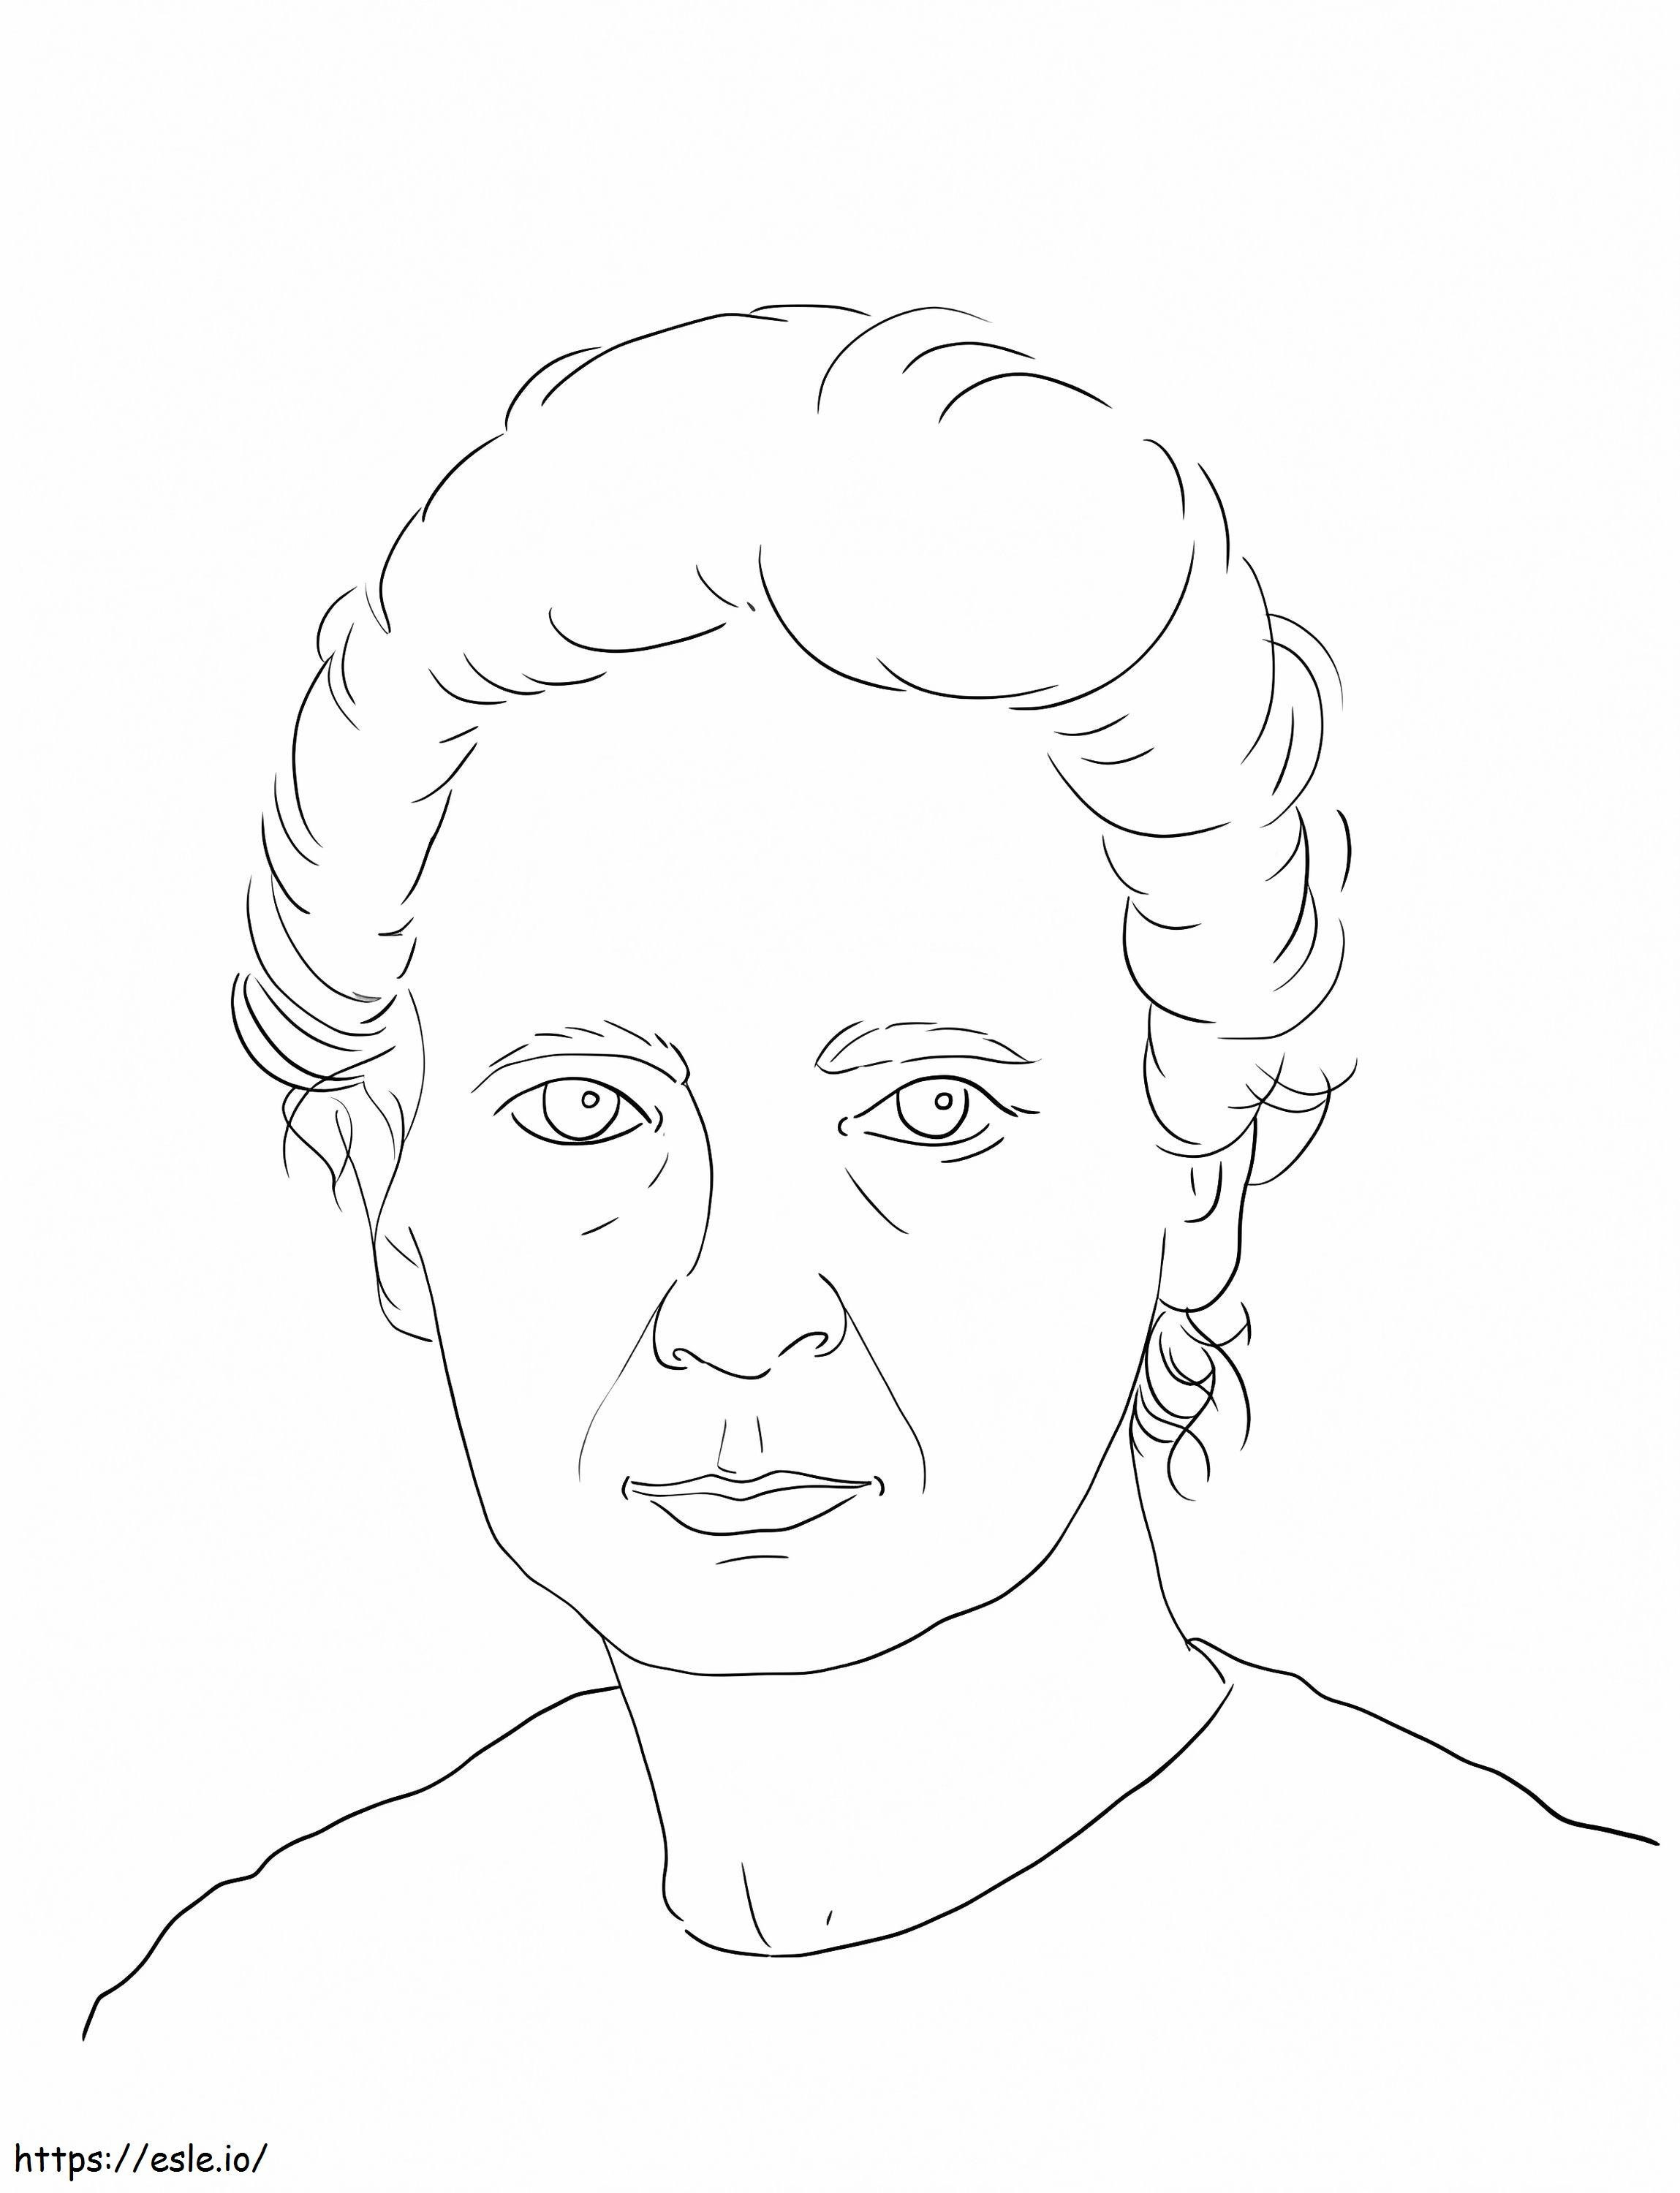 María Curie 3 para colorear